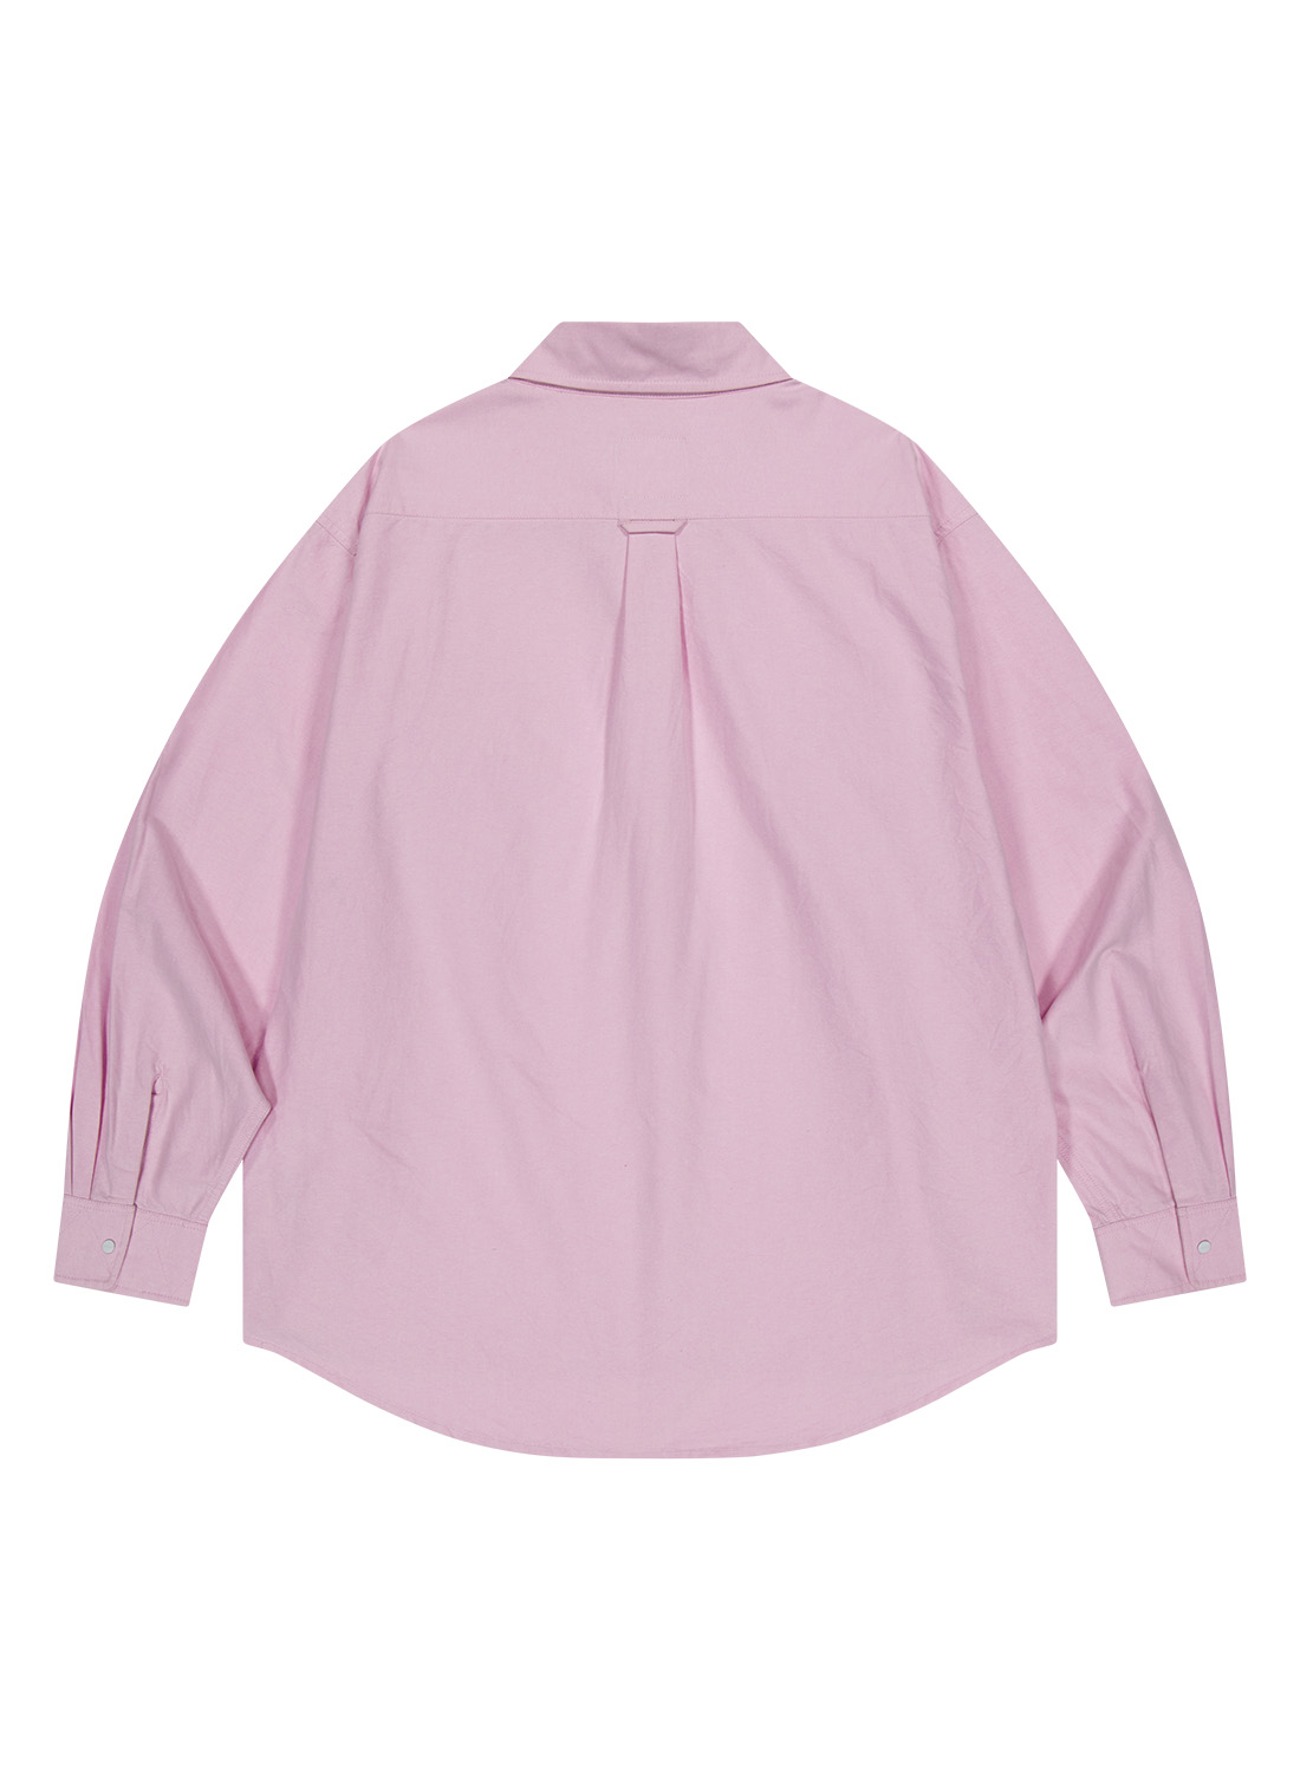 OG 스티치 옥스포드 스냅 셔츠-핑크